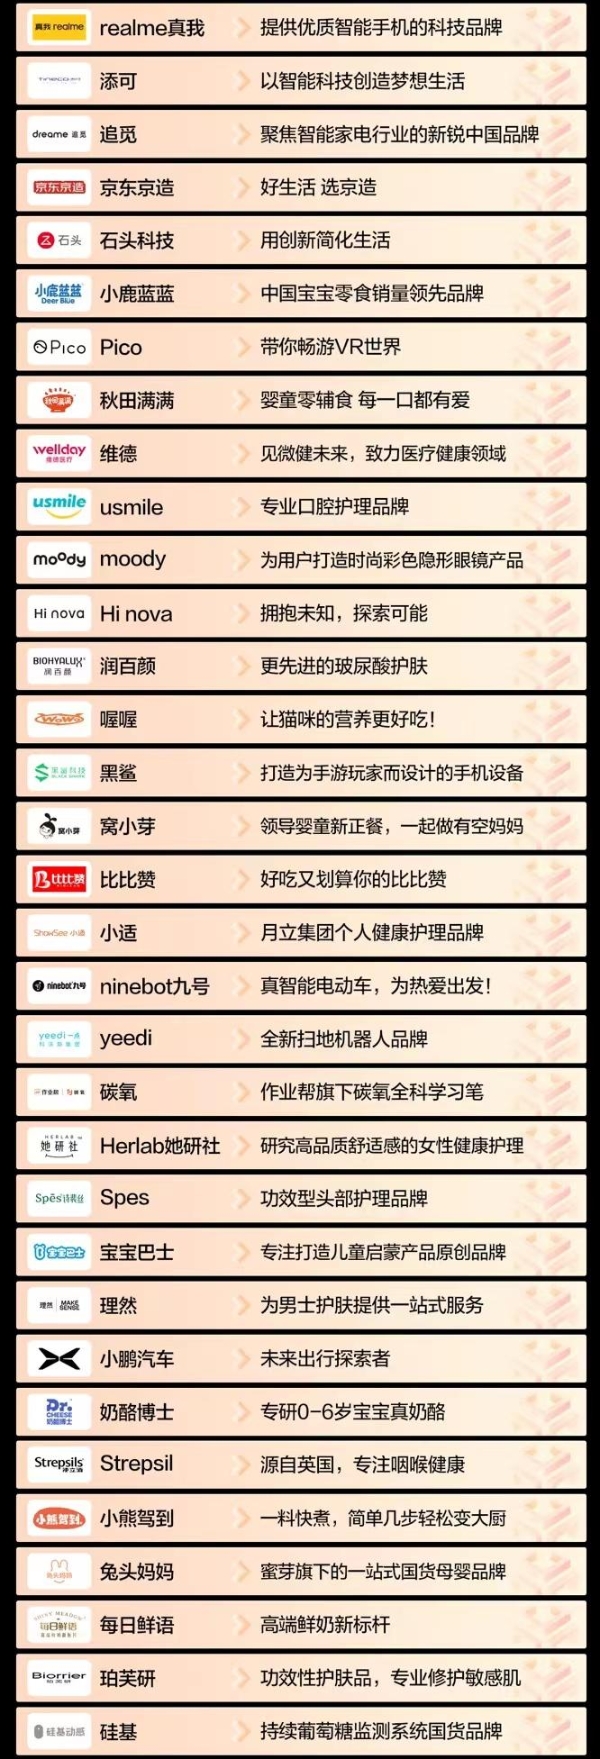 京东小魔方发布新锐品牌TOP100 超60个新锐品牌增长超500%